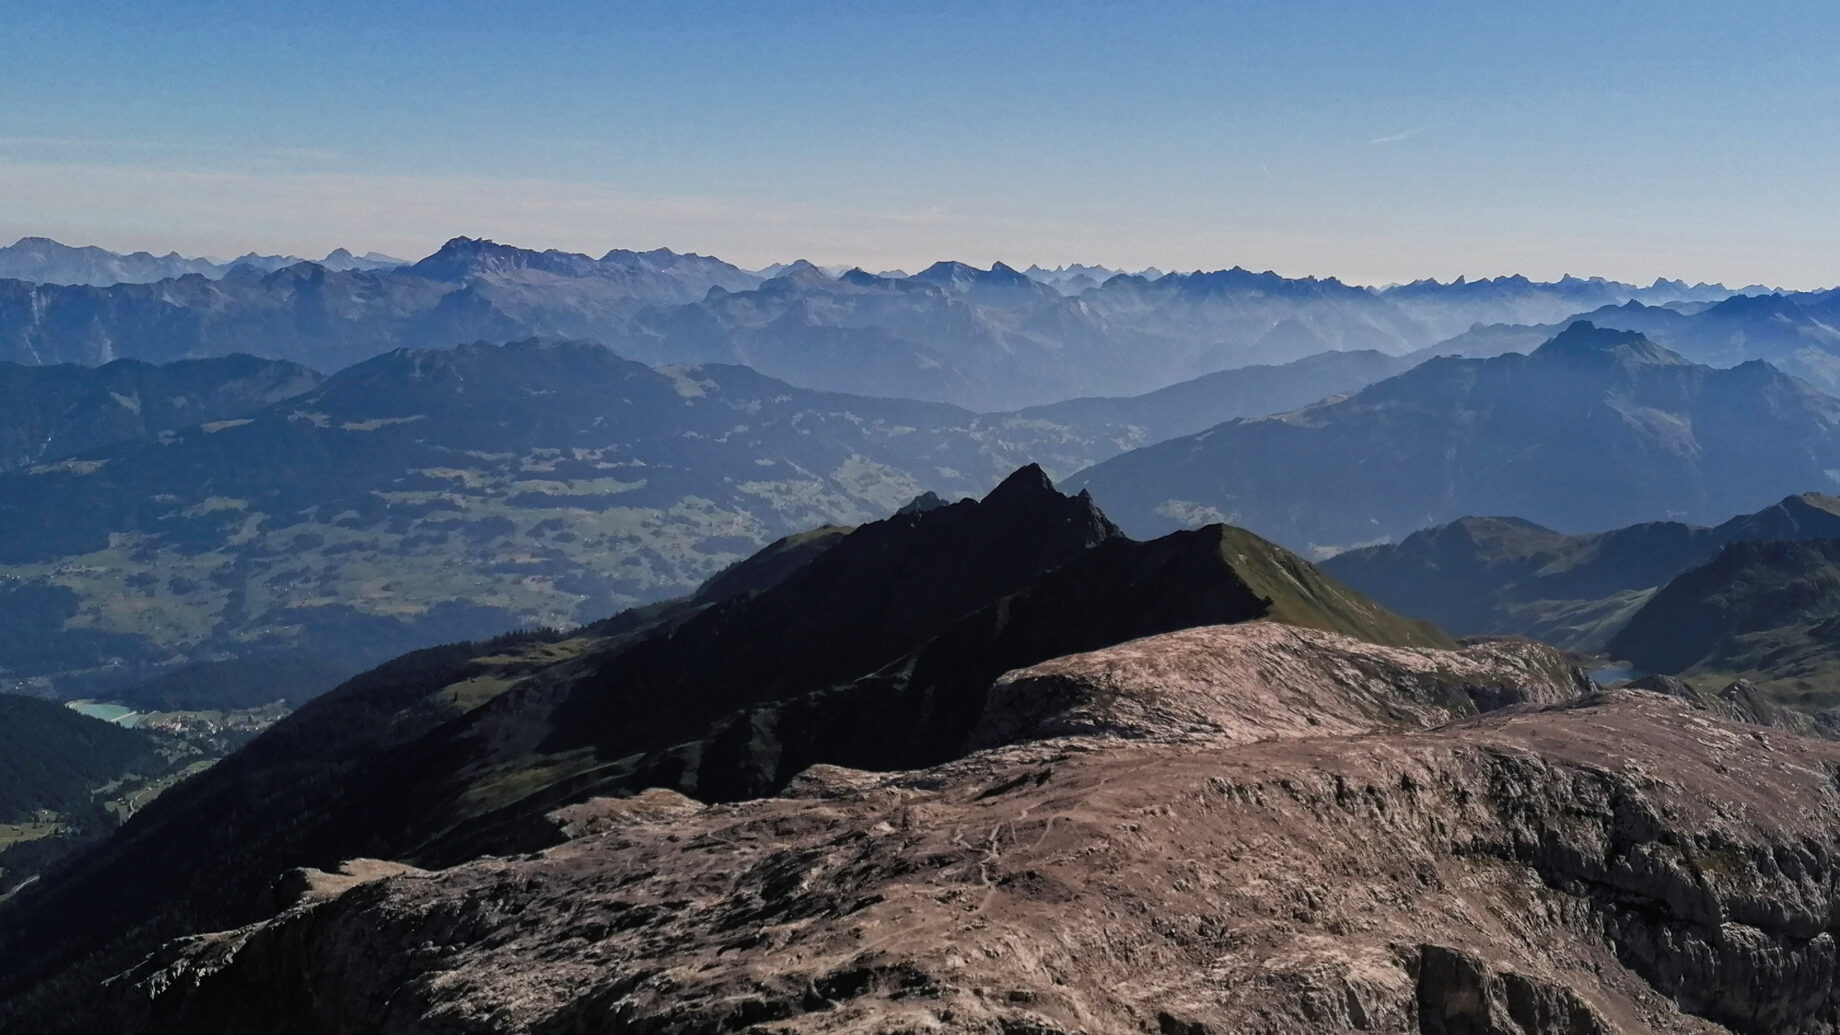 Gipfelblick nach Nord, über dem massiven Bergstock kann man den Tilisunasee erkennen, links im Bild der Stausee Latschau. Foto: Norman und Lisa